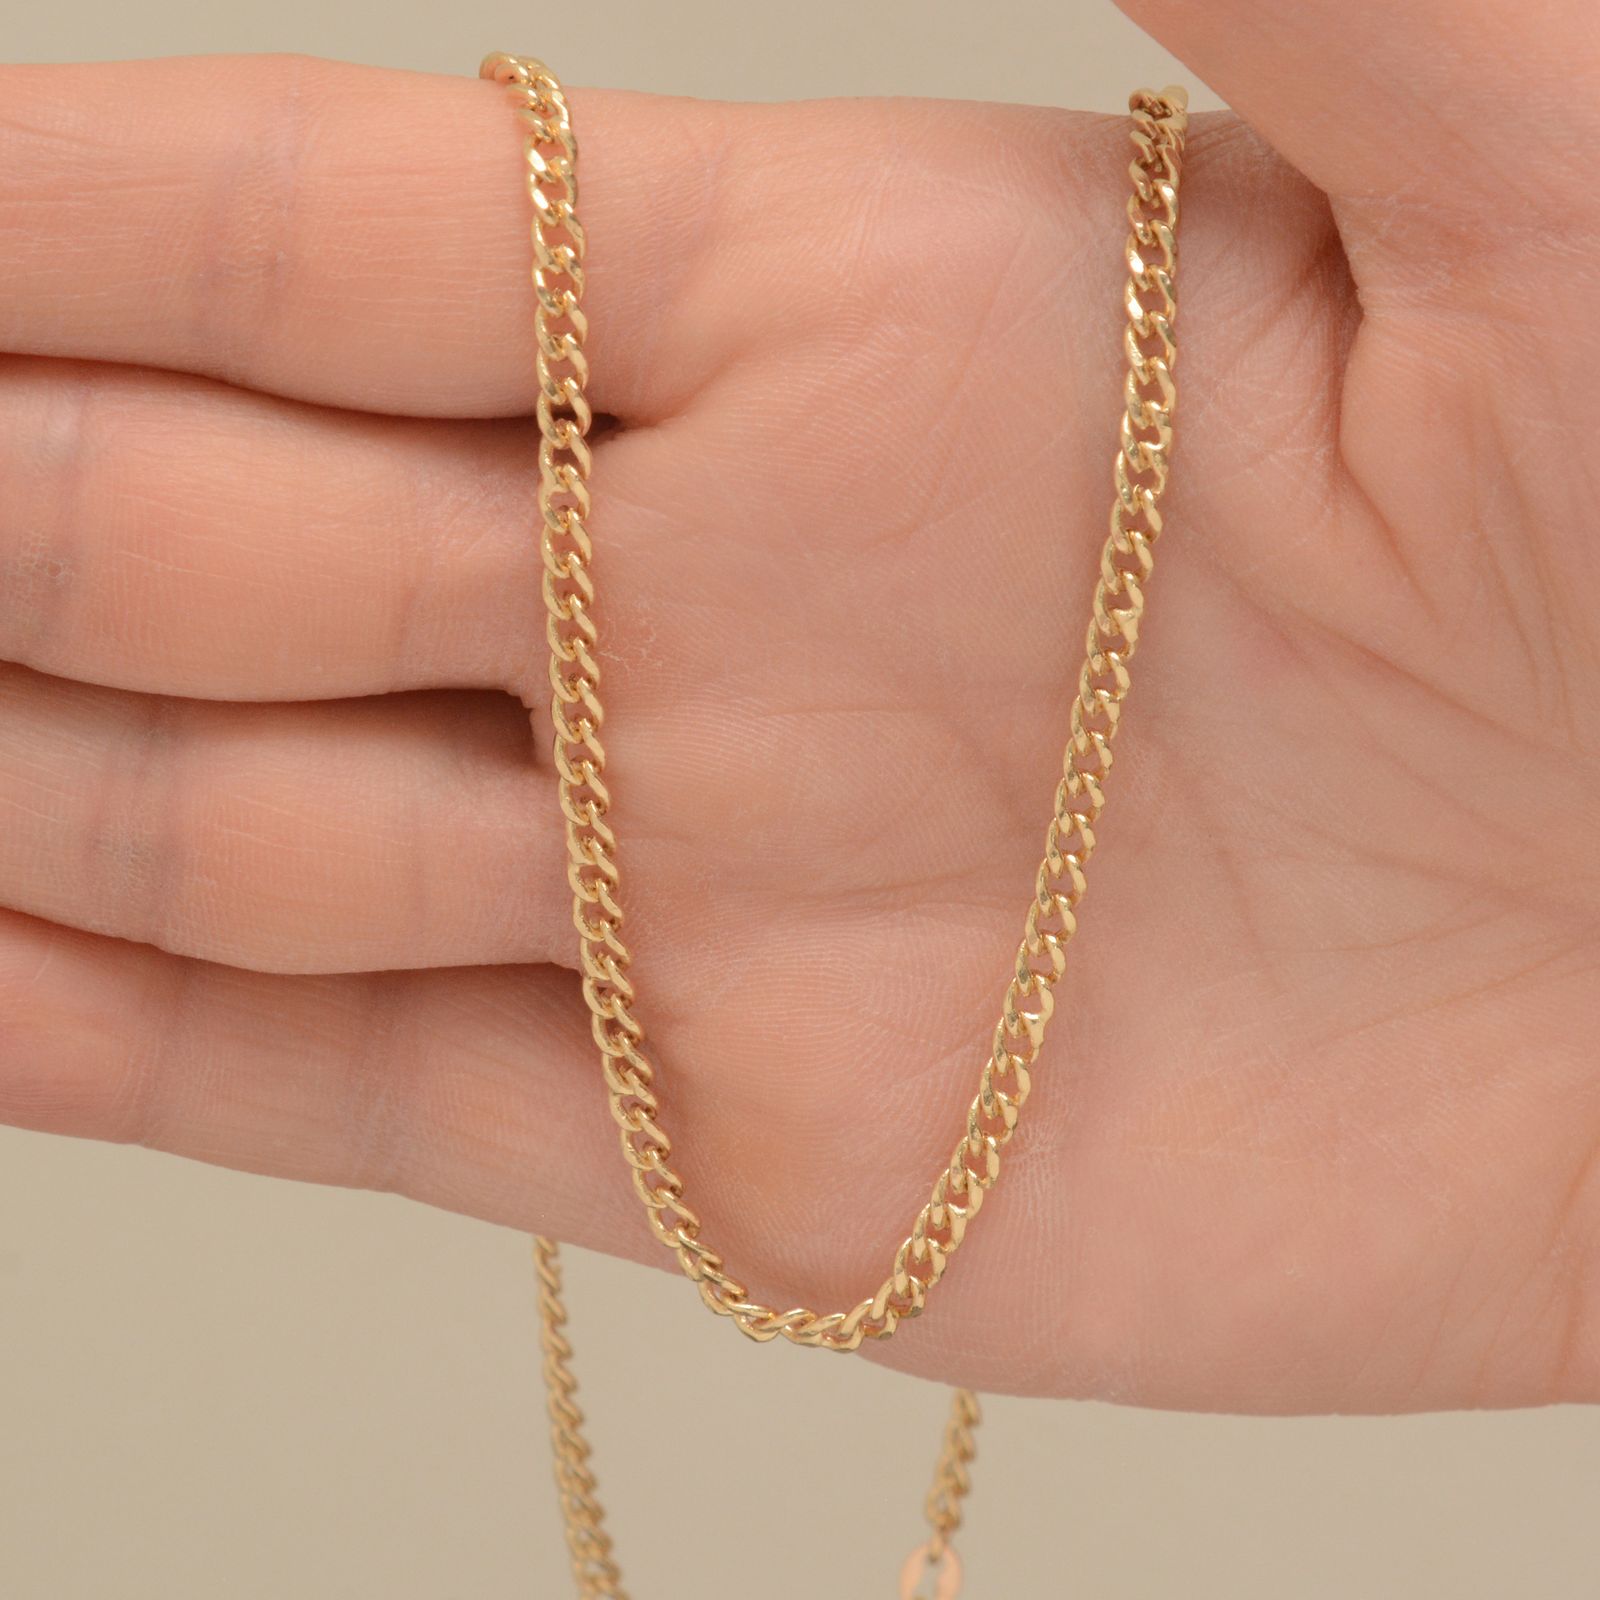 زنجیر طلا 18 عیار زنانه جواهری سون مدل 4263 -  - 2